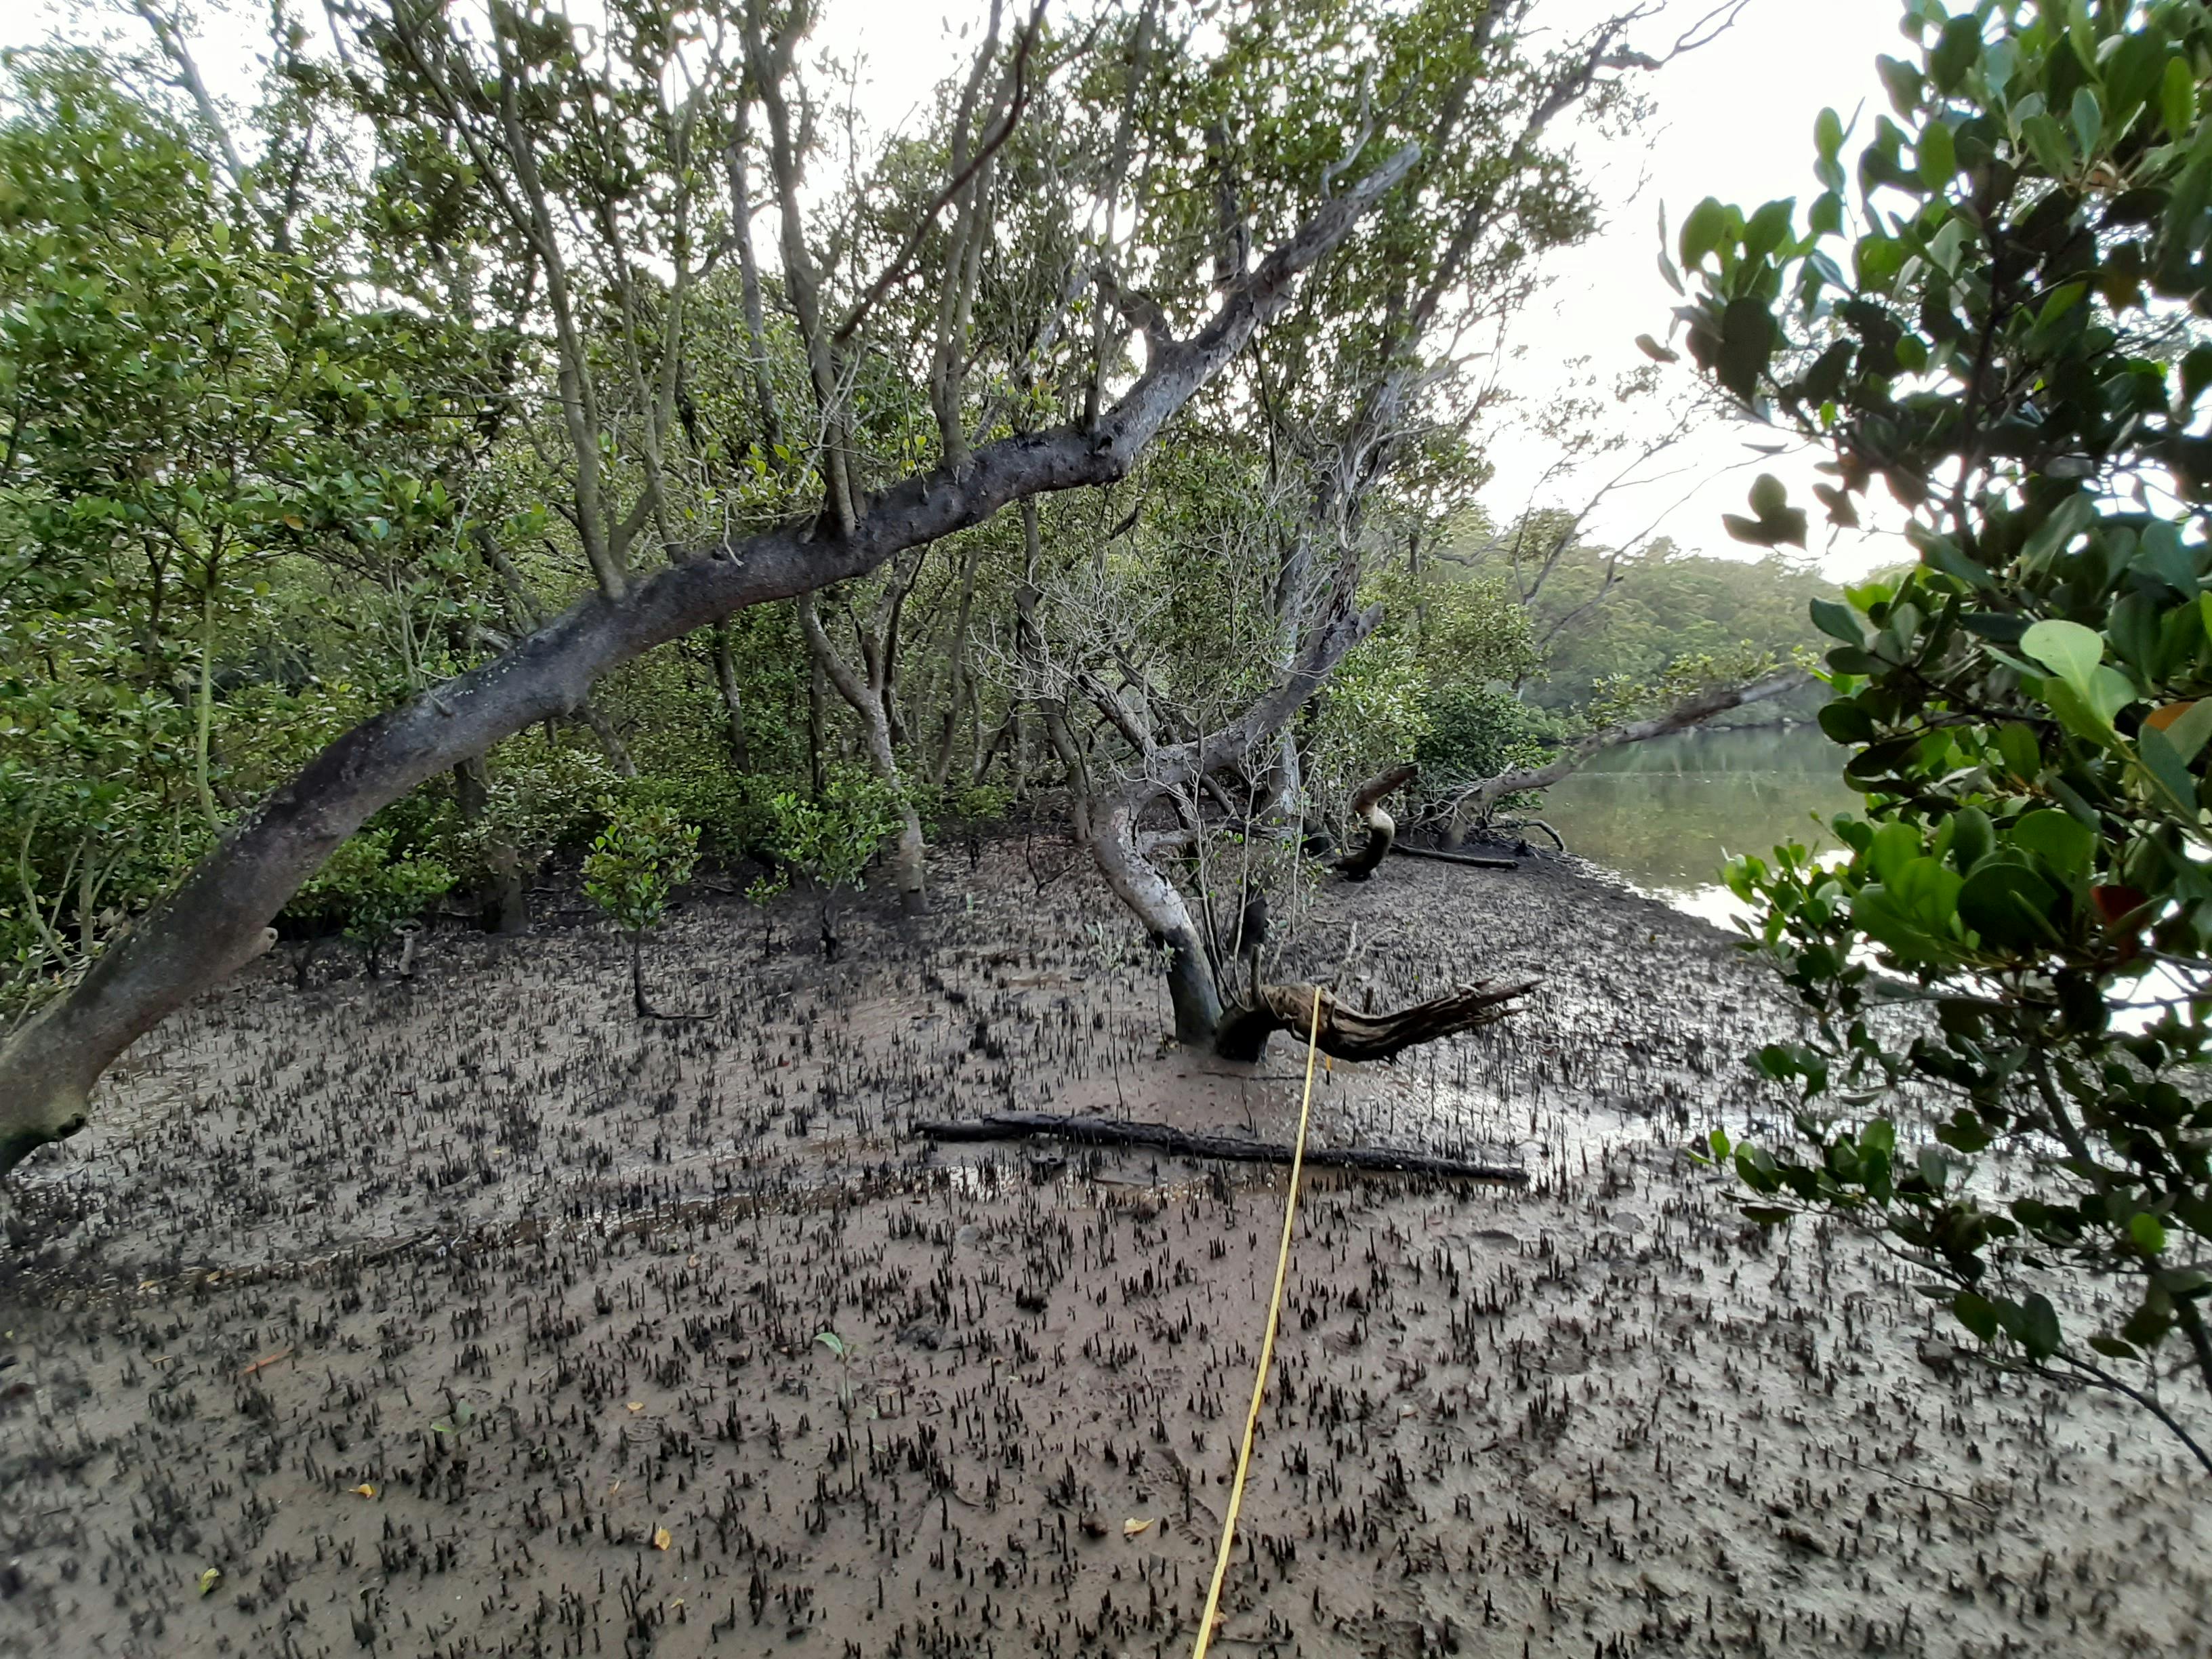 Vegetation survey transect (mangroves) Evatt Park